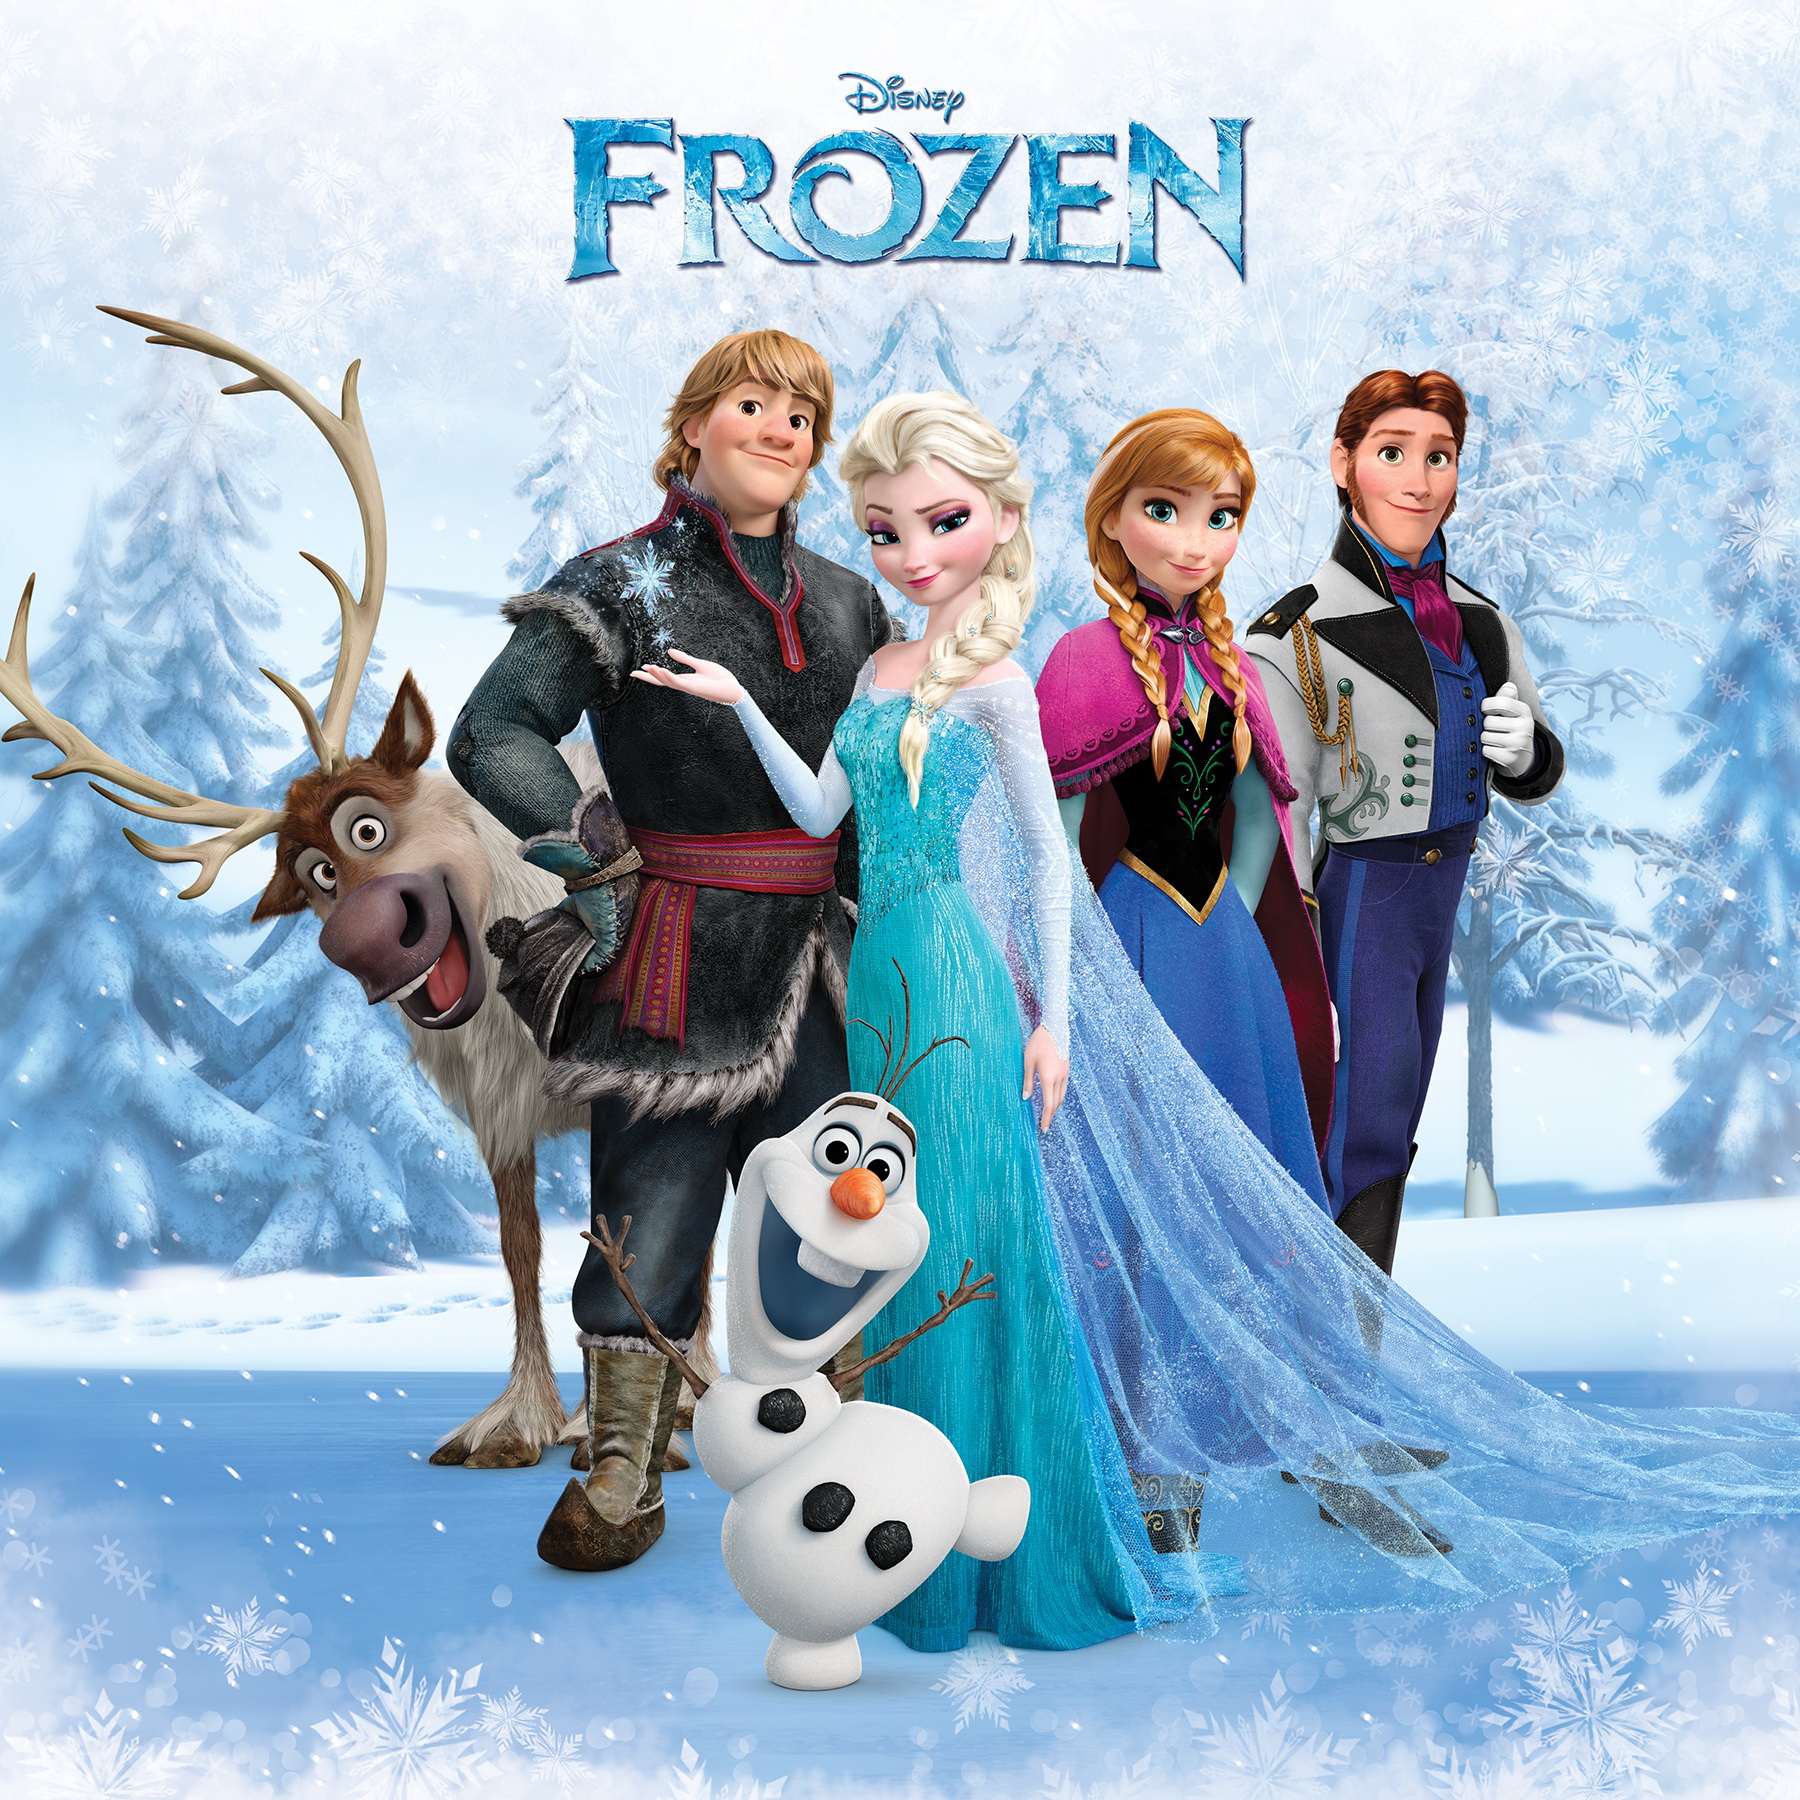 Frozen - Frozen Photo (36688493) - Fanpop